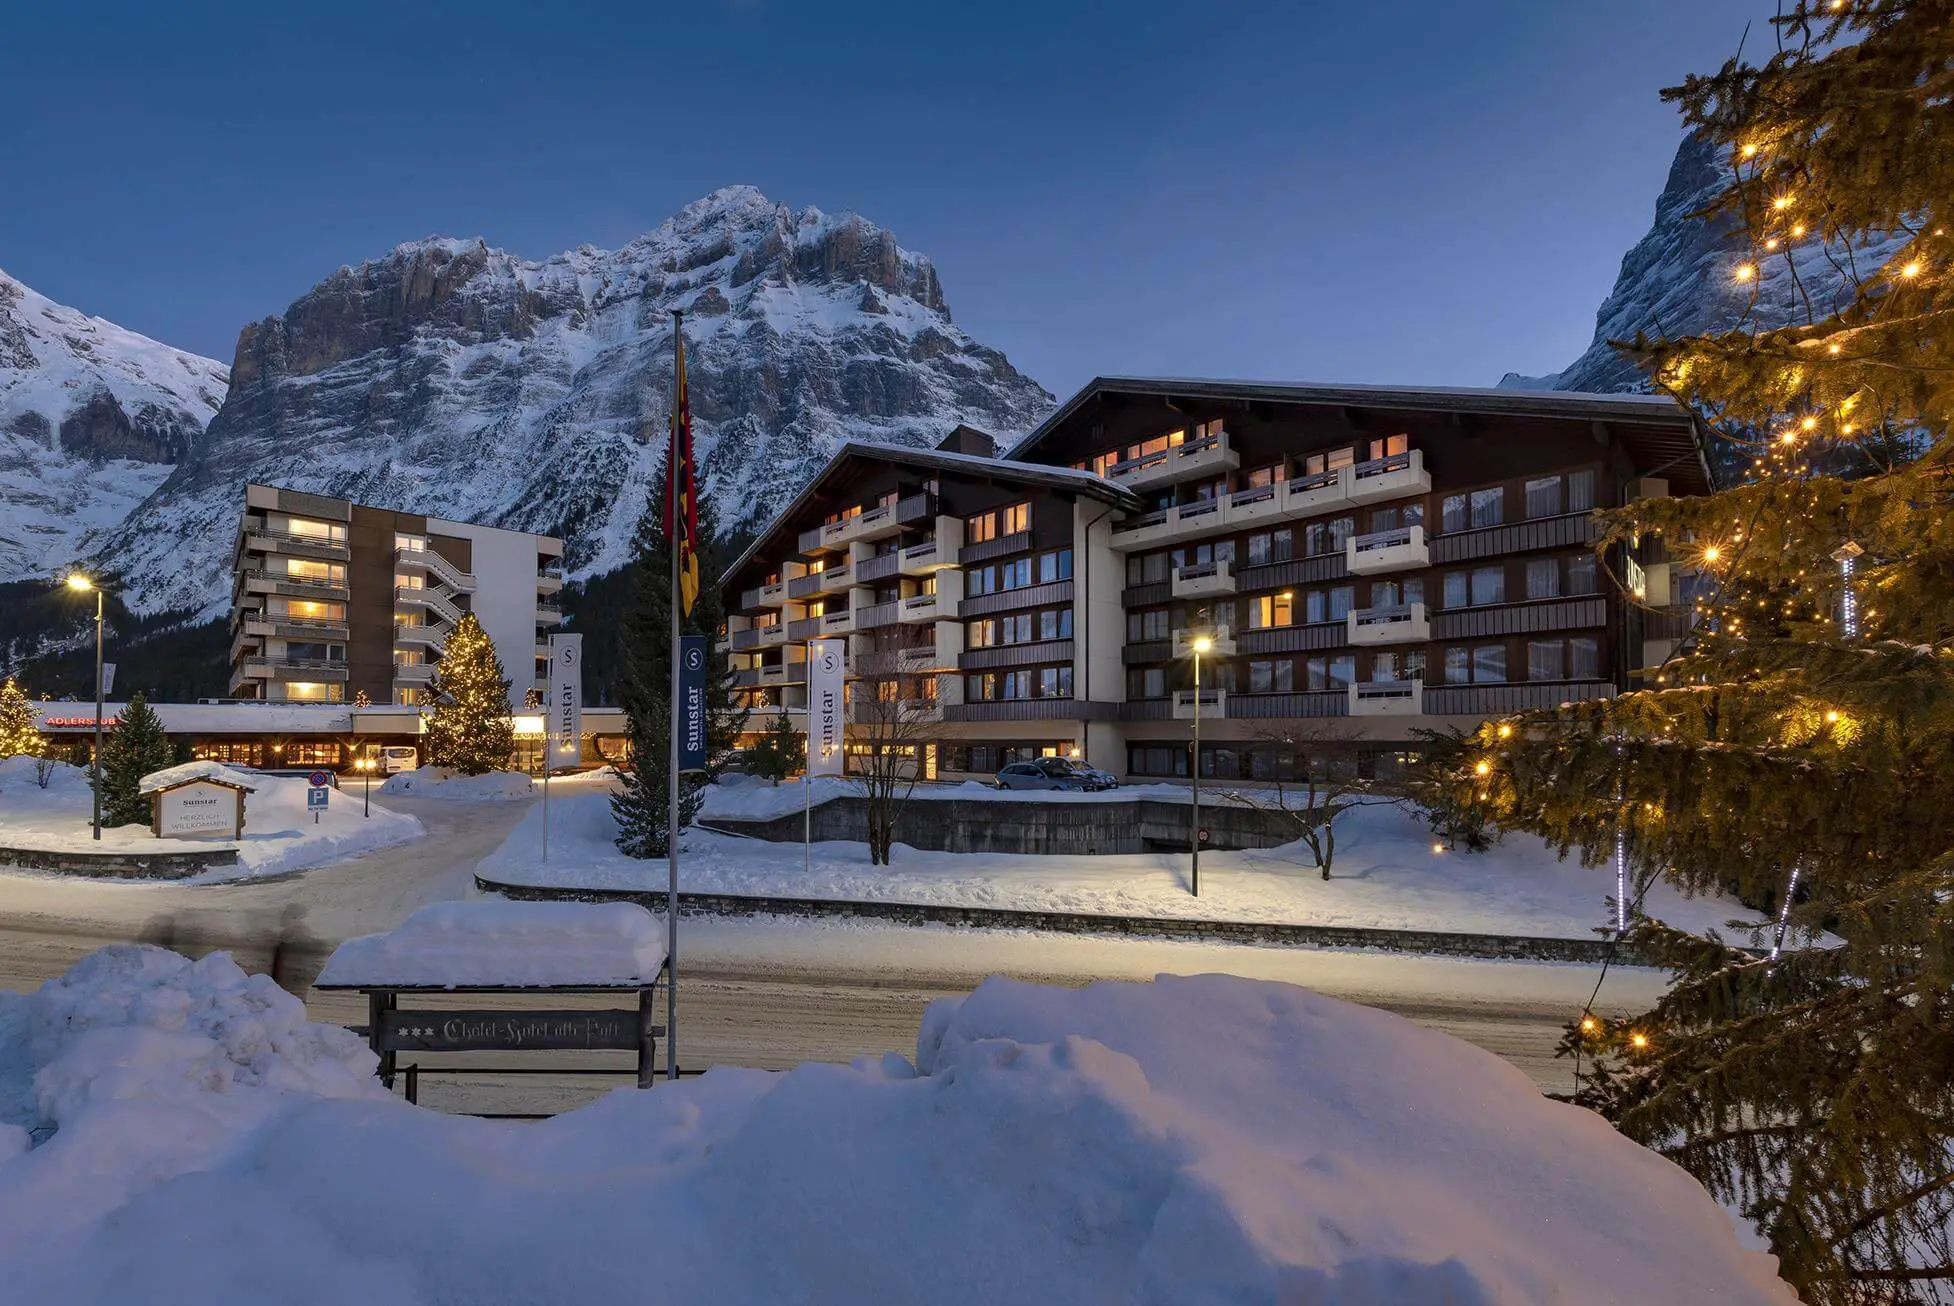 Best hotels in Grindelwald Switzerland